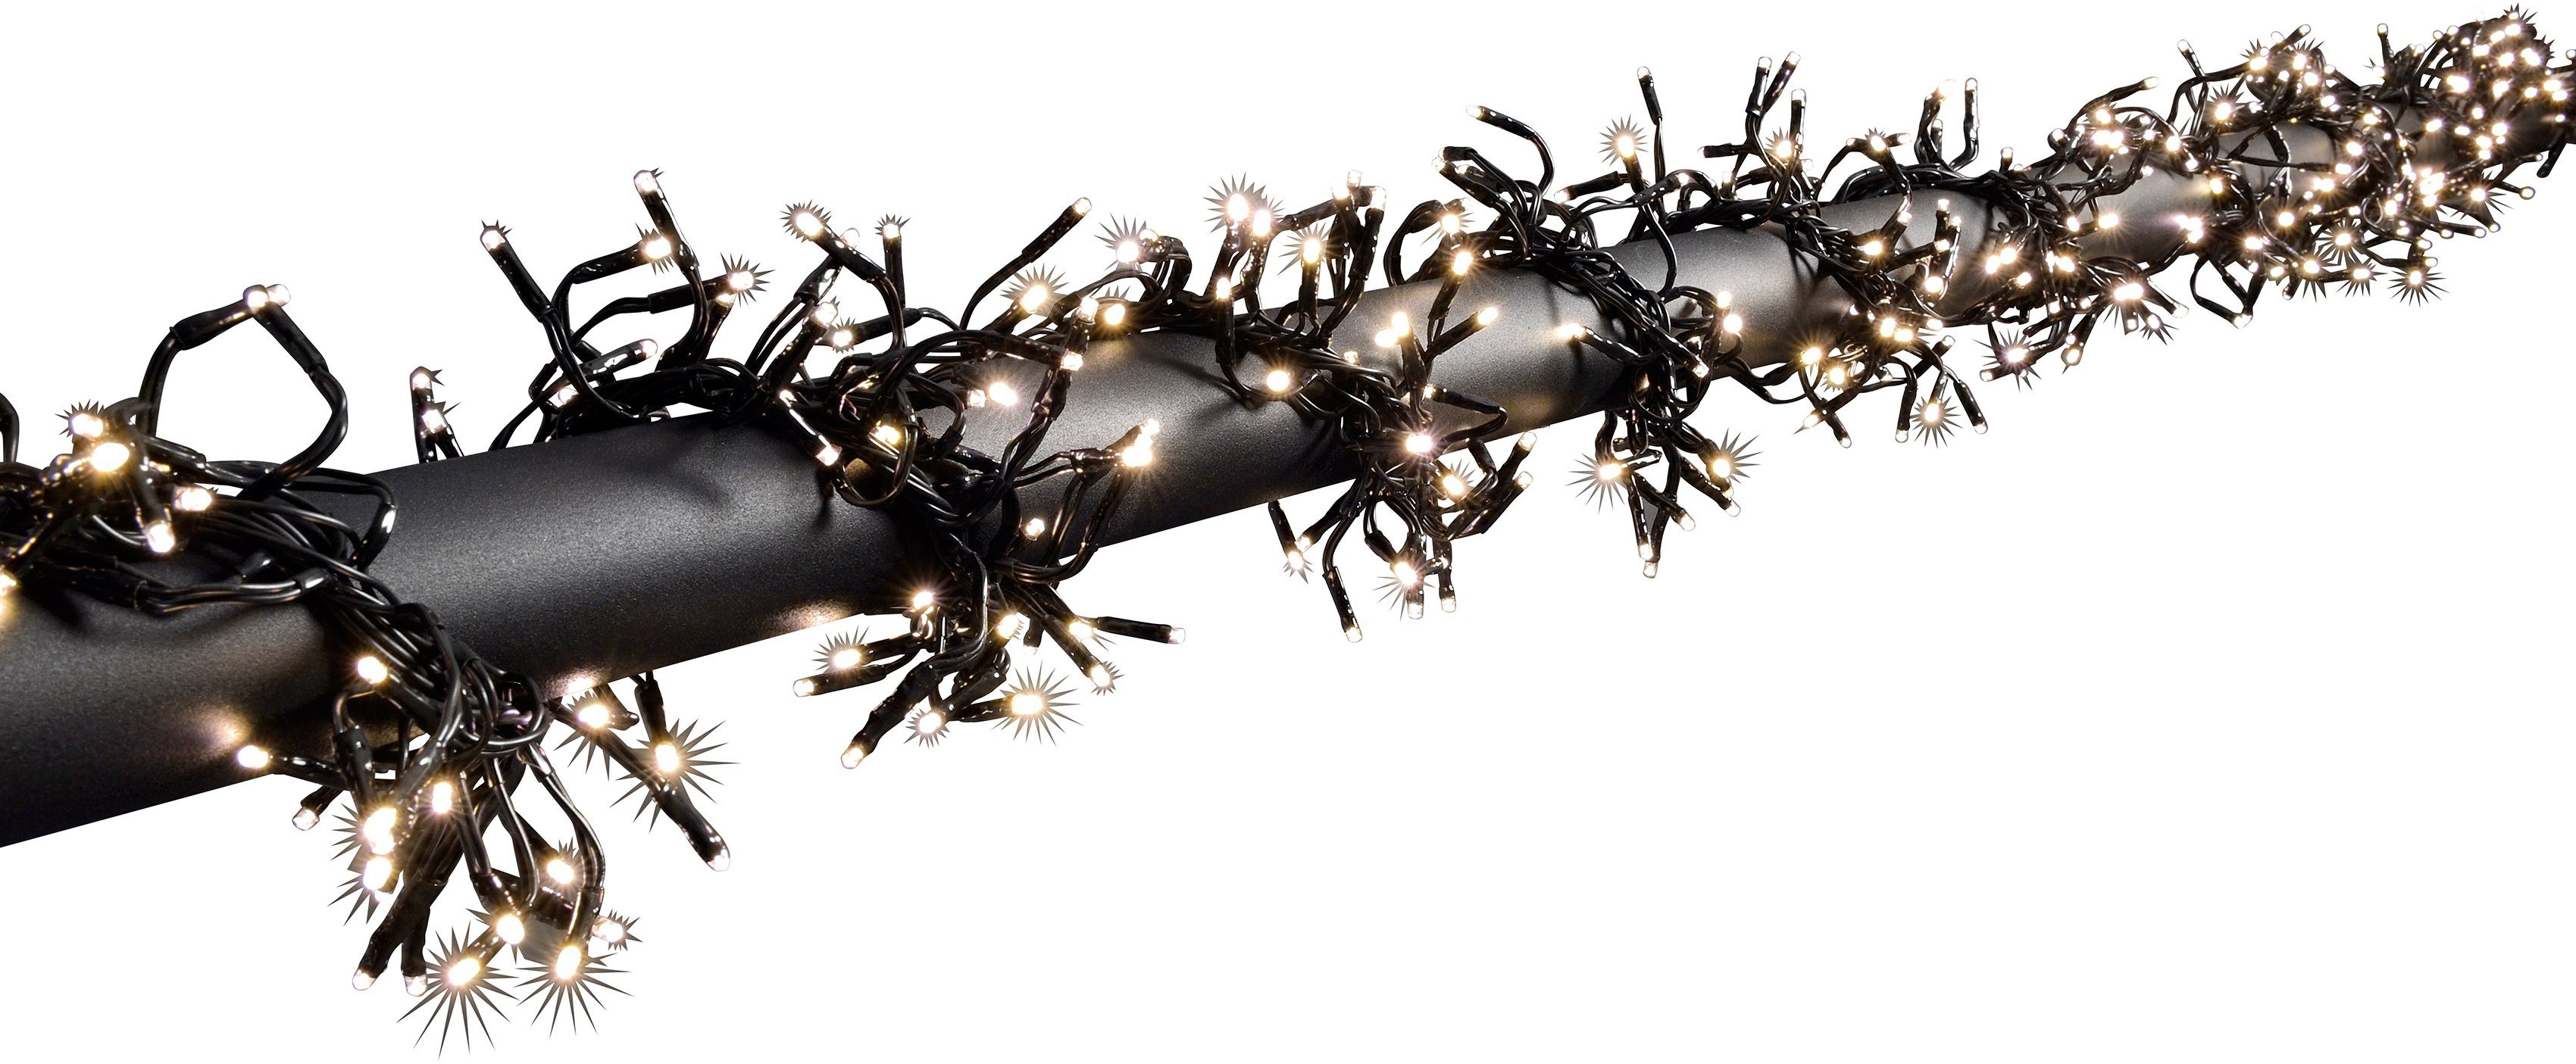 KONSTSMIDE LED-Lichterkette Büschellichterkette Cluster, Weihnachtsdeko  aussen, mit 8 Funktionen und 1152 warmweißen Dioden, Länge ca. 860 cm mit  1152 warmweißen Dioden